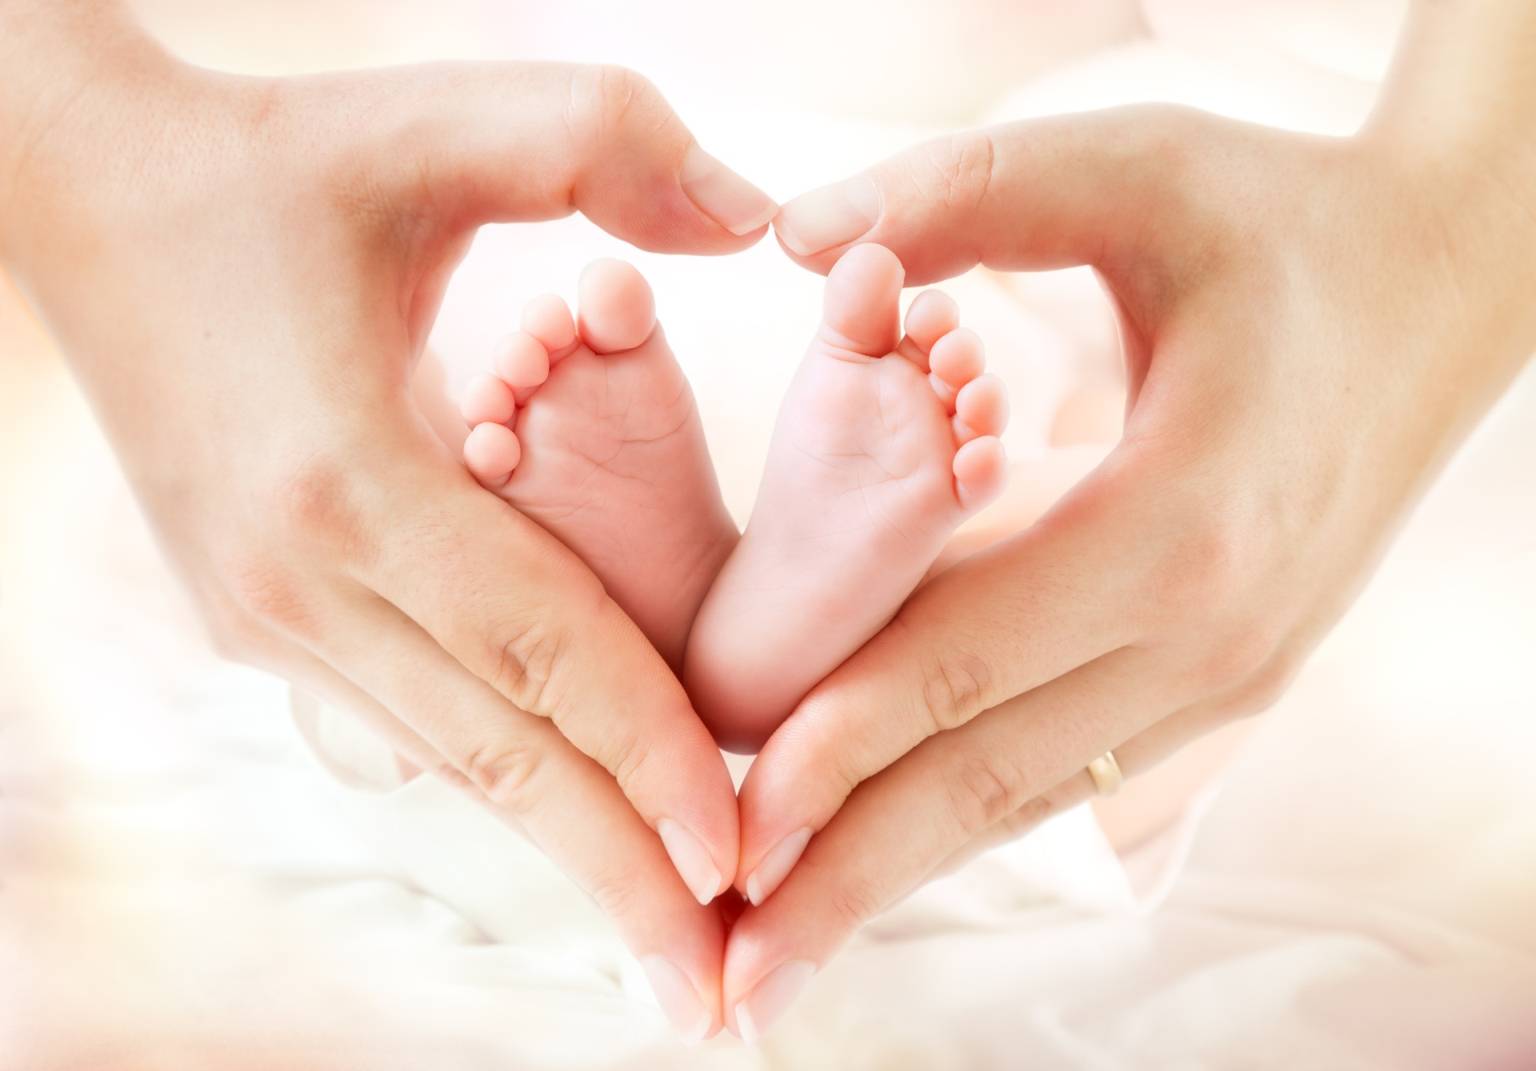 Leczenie niepłodności. Zbliżenie na dłonie kobiety, która trzyma w nich stopy niemowlęcia, uformowane w kształt serca.